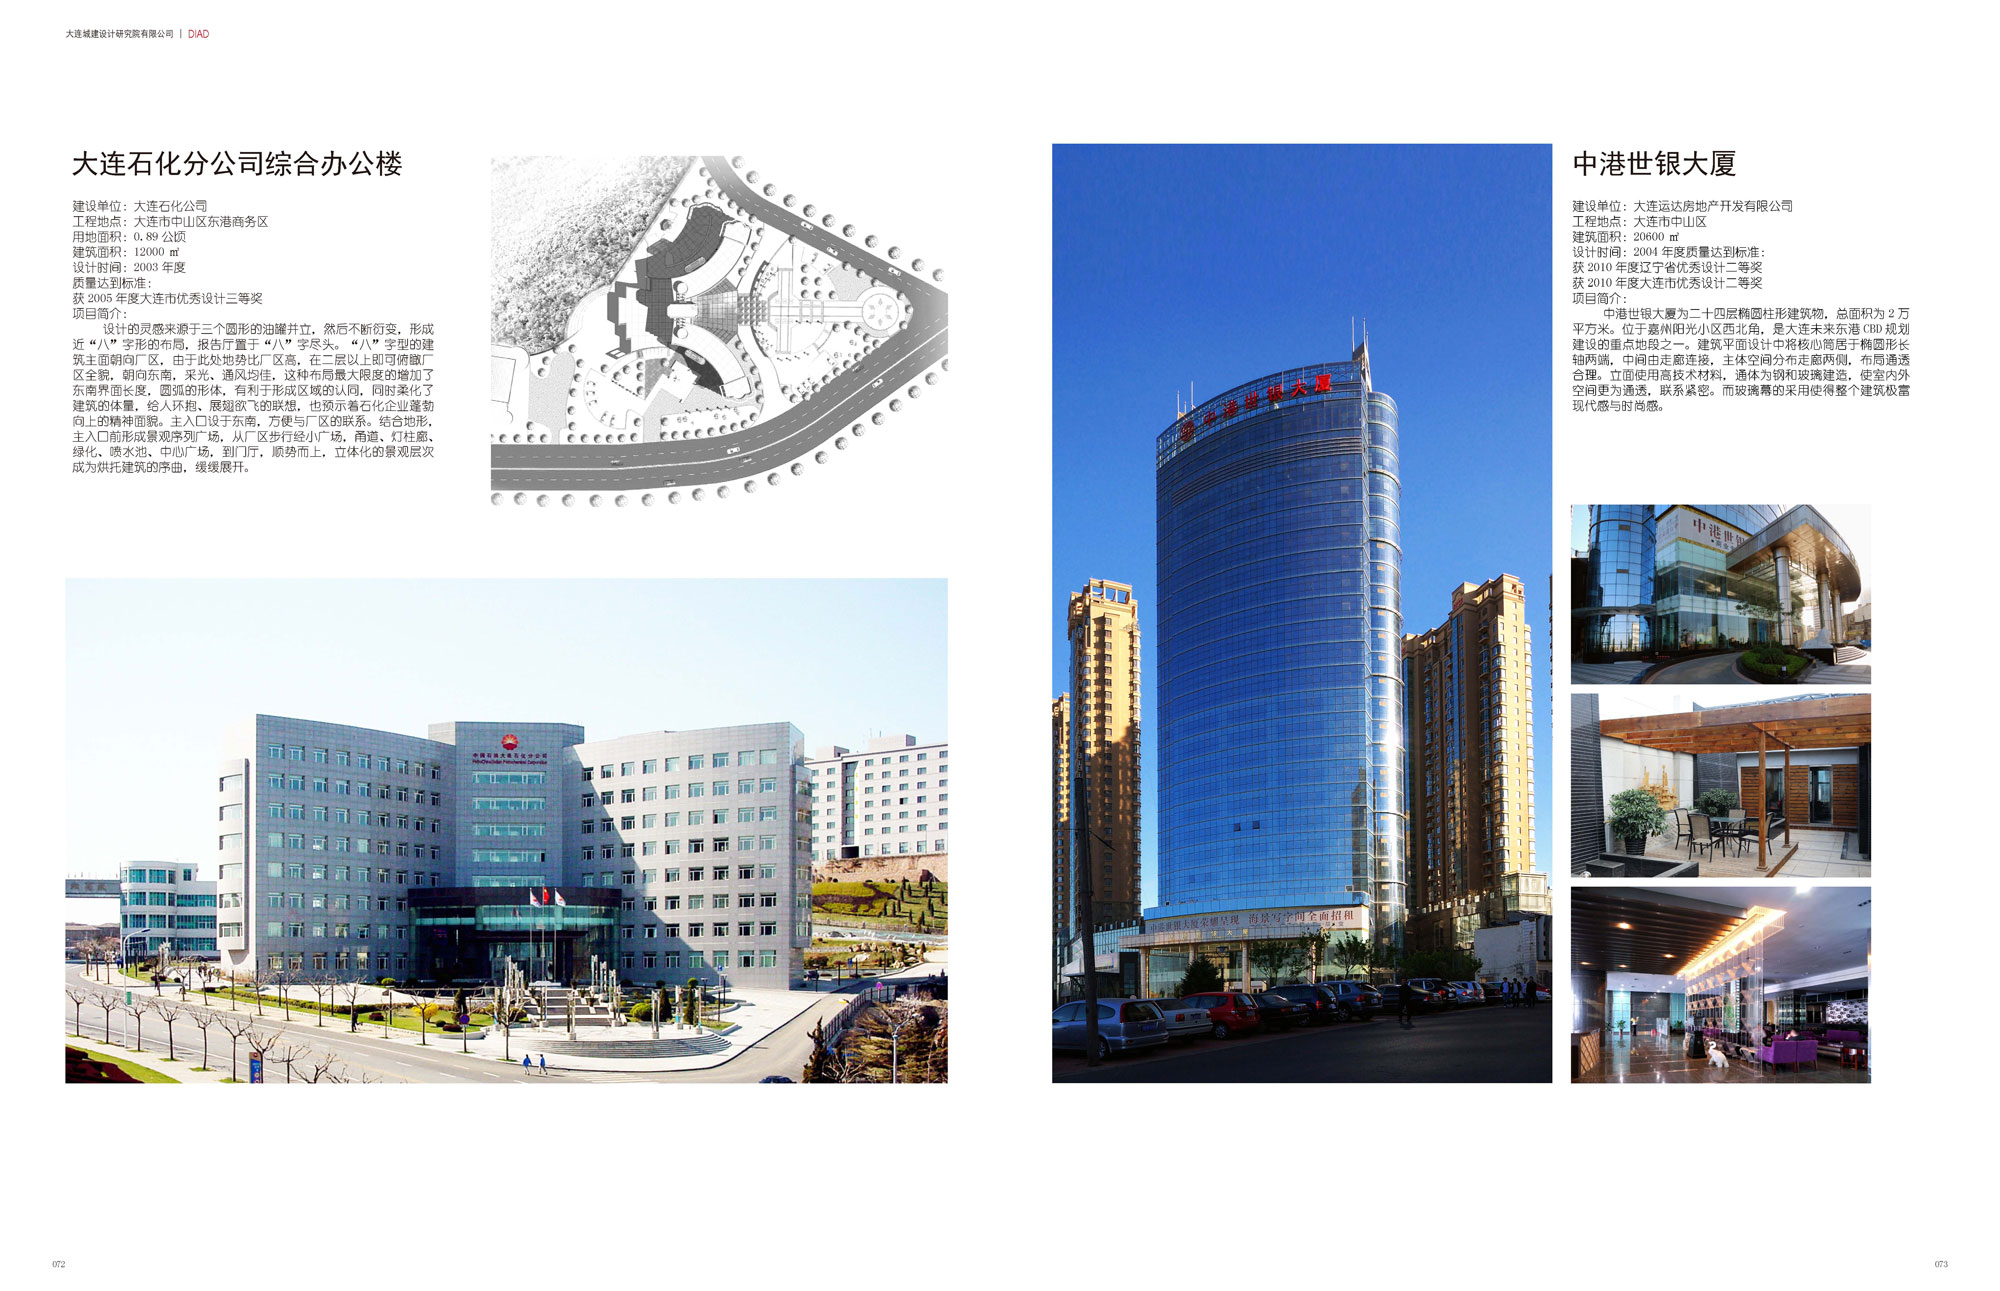 PetroChina Dalian Branch Complex Office Building & Zhonggang Shiyin Building Mansion